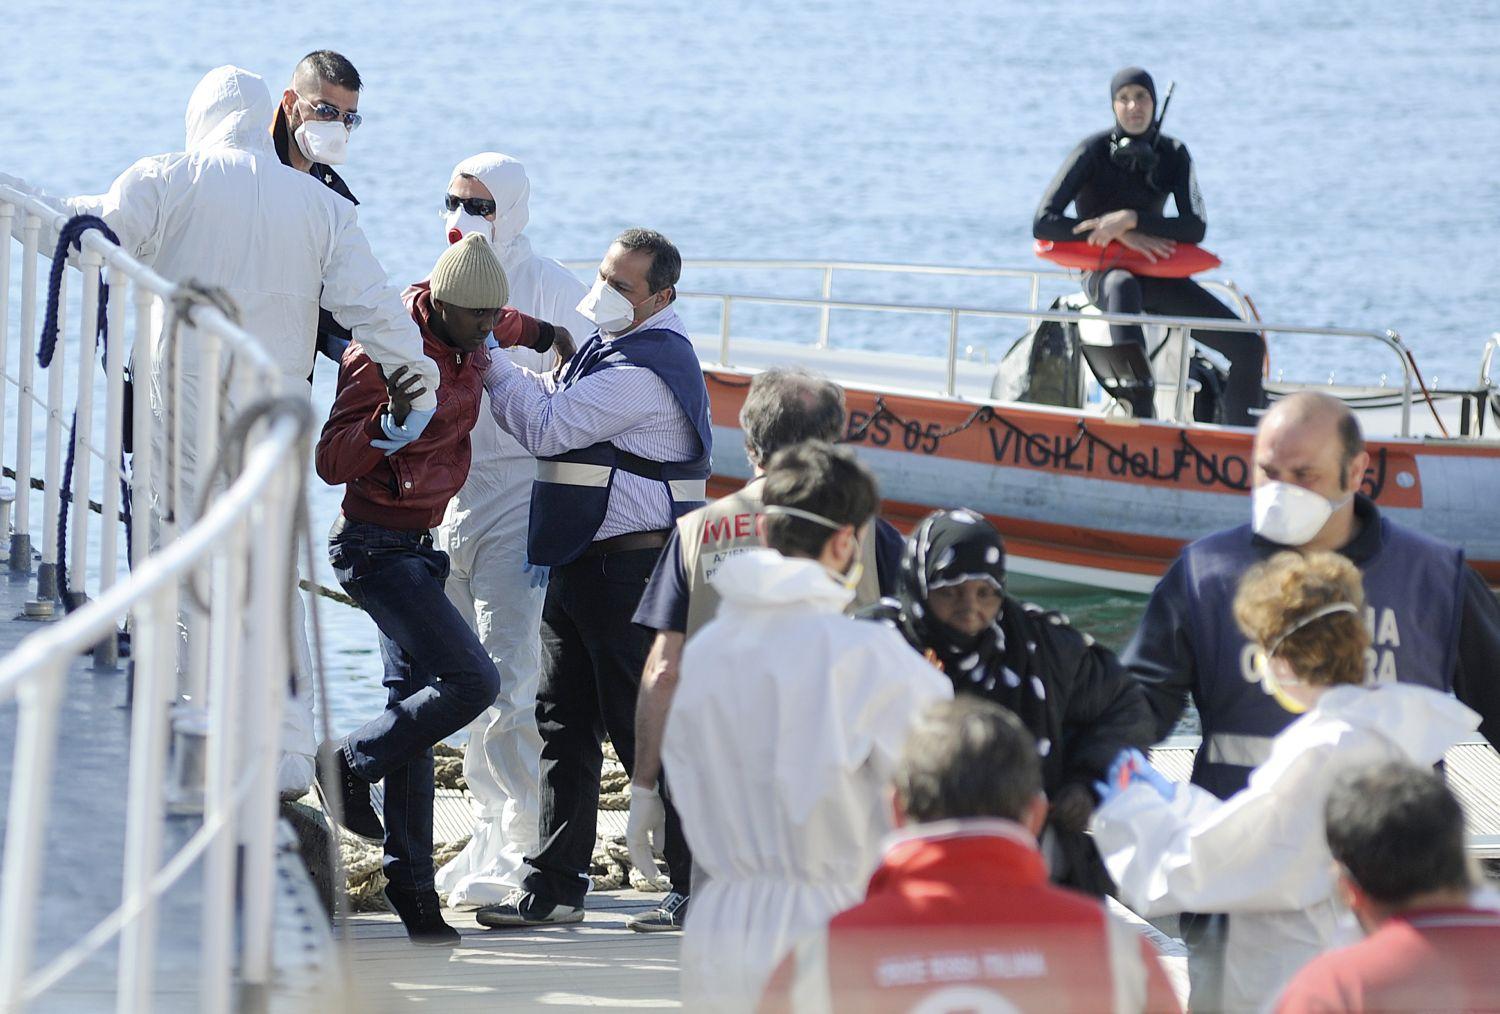 Túlélőket segítenek a partra Palermo kikötőjében